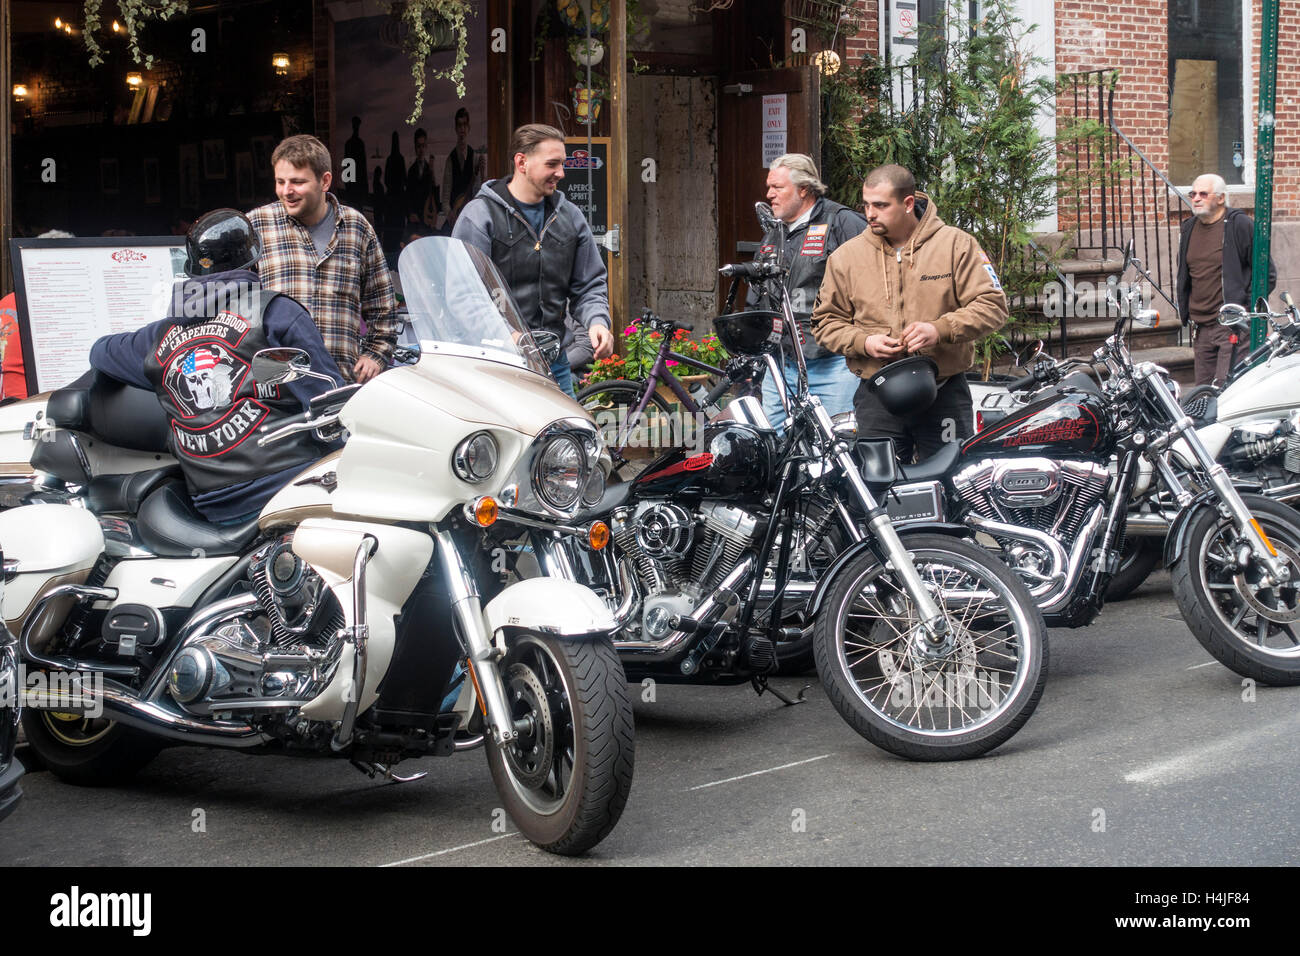 Un club de moto Harley-Davidson parking leurs vélos à l'extérieur d'un restaurant La Petite Italie de New York City Banque D'Images